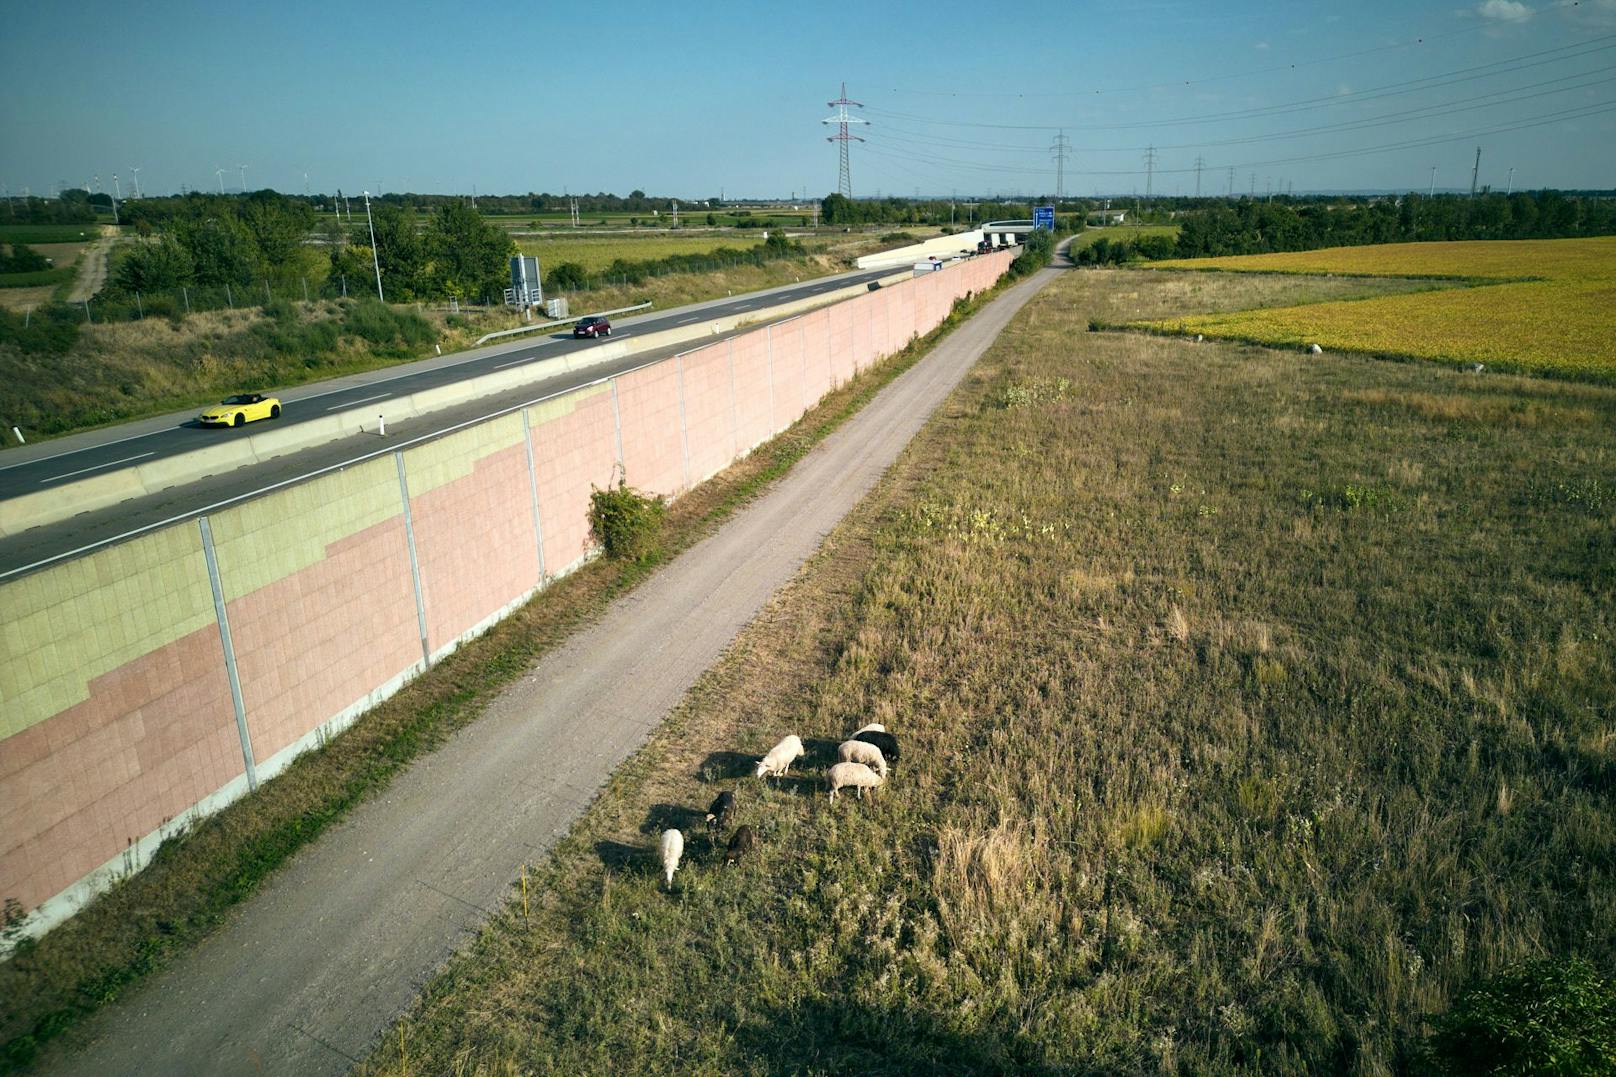 Bilder von den Mäh-Schafen an der Autobahn.